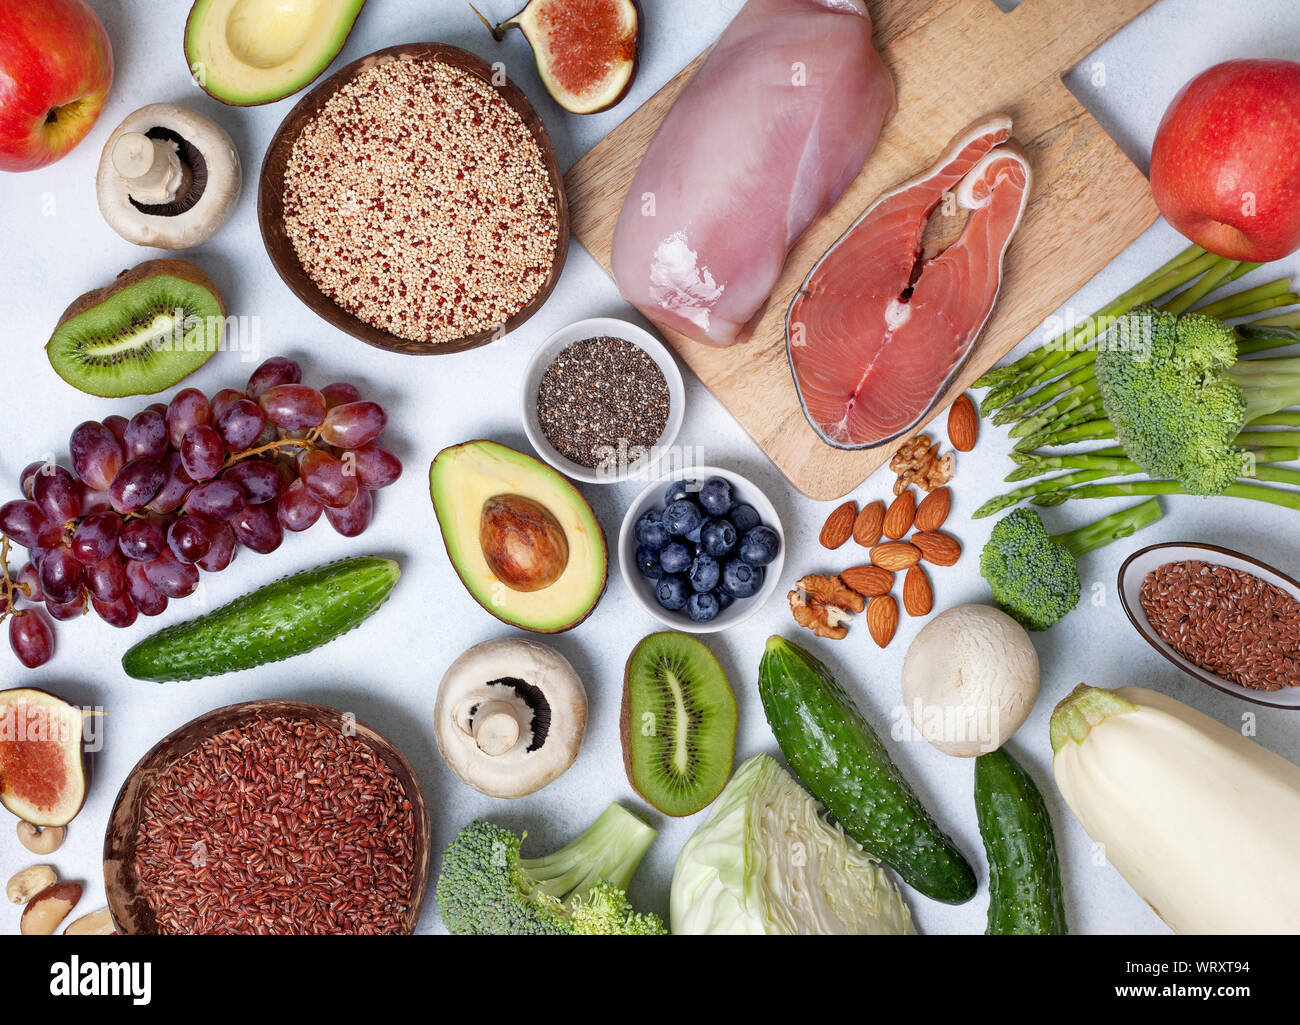 Alla moda dieta pegan. pegan dieta prodotti : carne, pesce, cereali, legumi, noci e bacche. vista da sopra Foto Stock